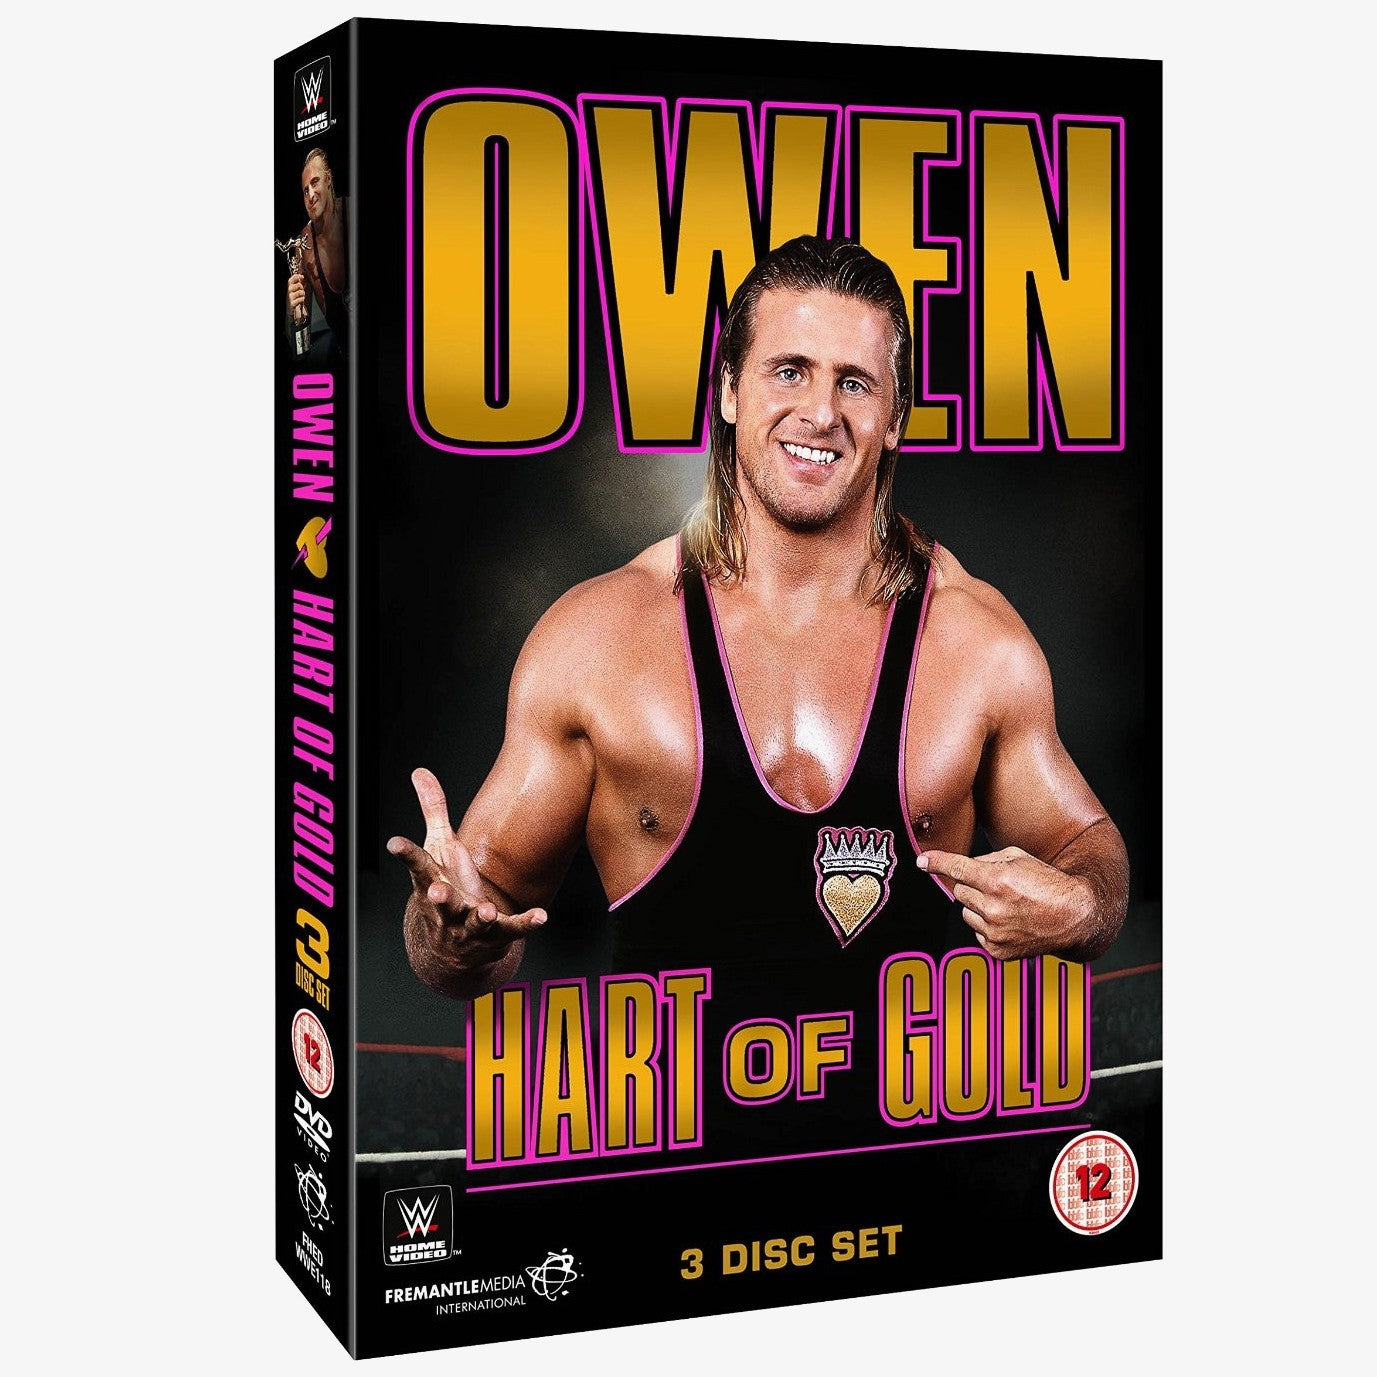 WWE Owen - Hart of Gold DVD